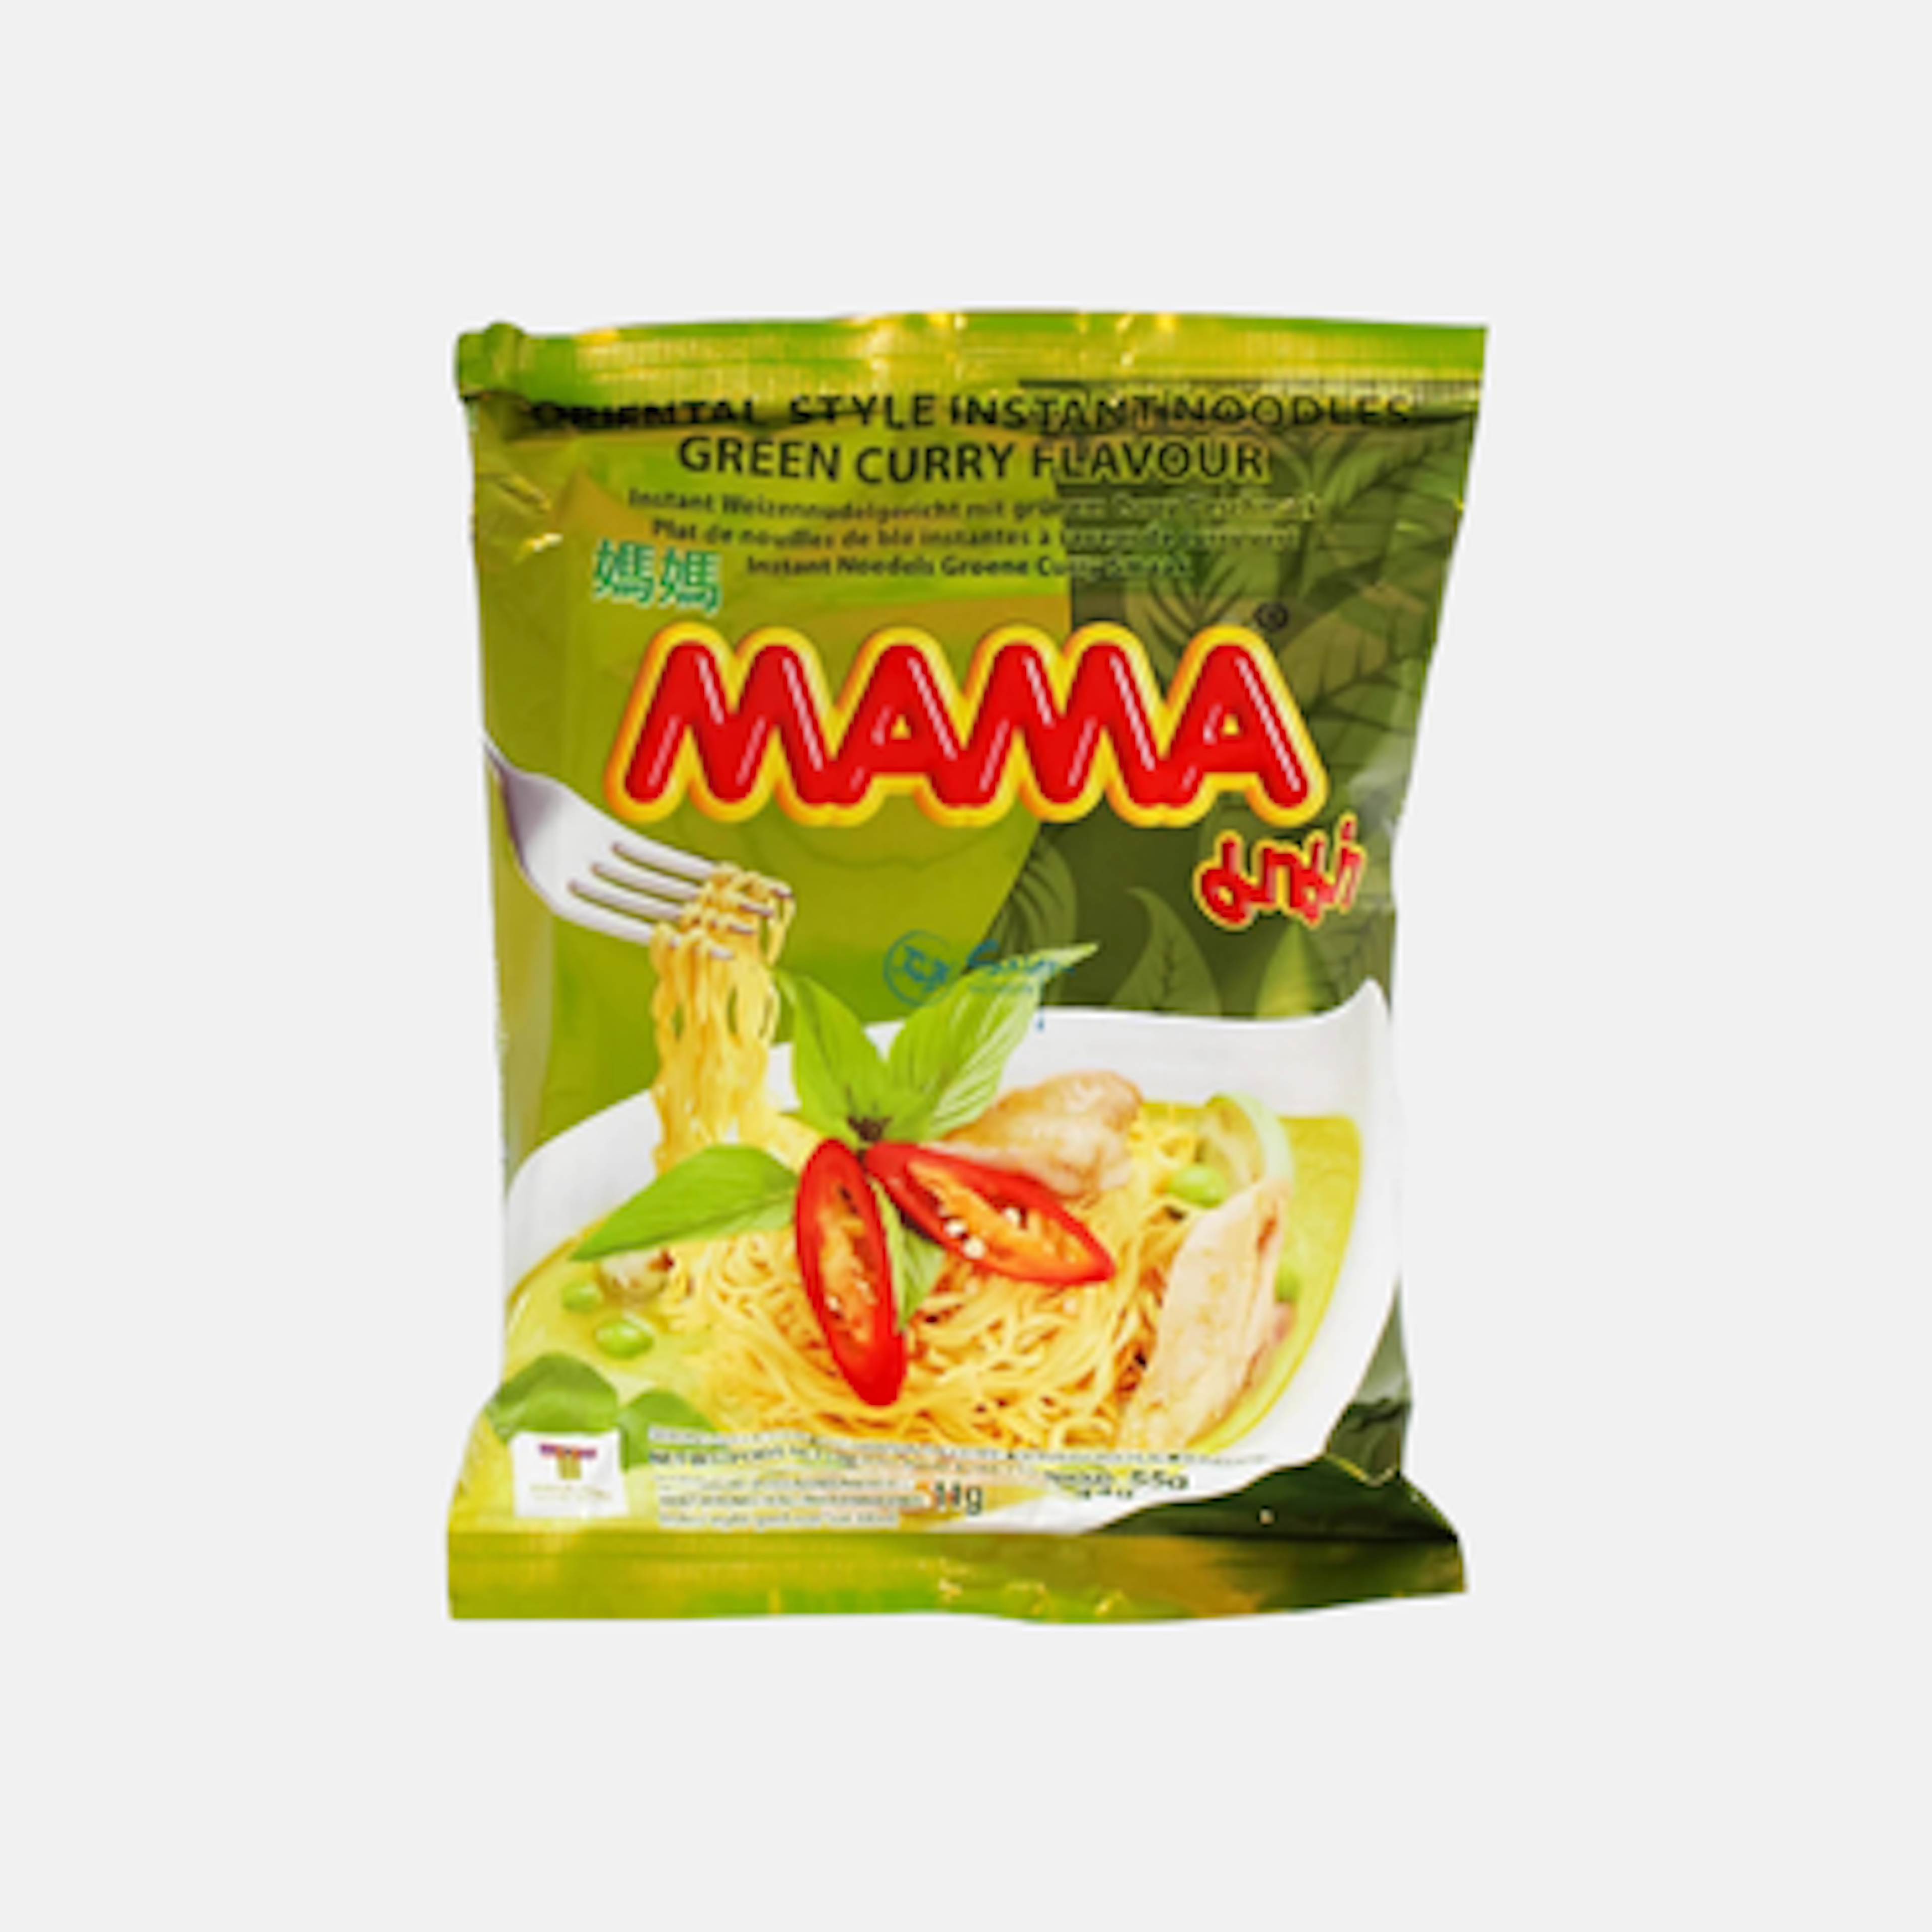 Mama Instantnudeln Grüner Curry Geschmack - Authentische Thai-Nudeln, 55g